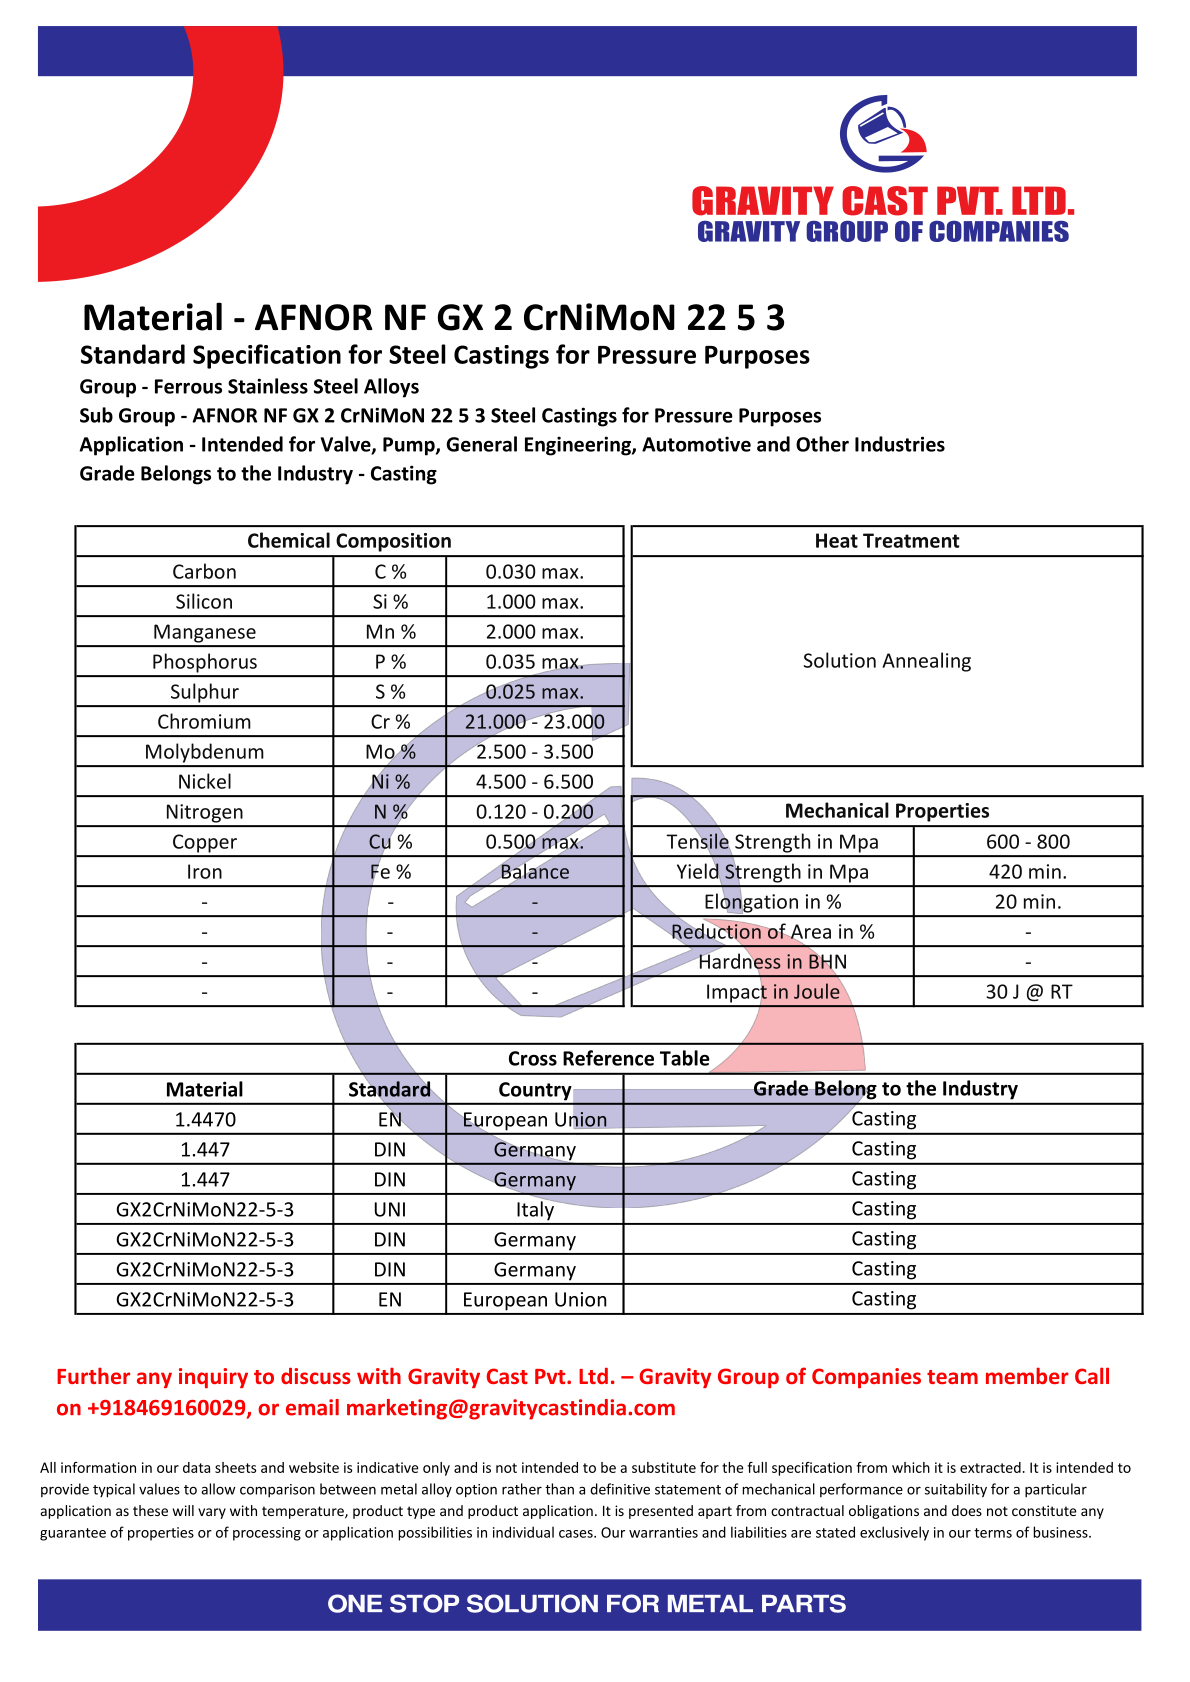 AFNOR NF GX 2 CrNiMoN 22 5 3.pdf